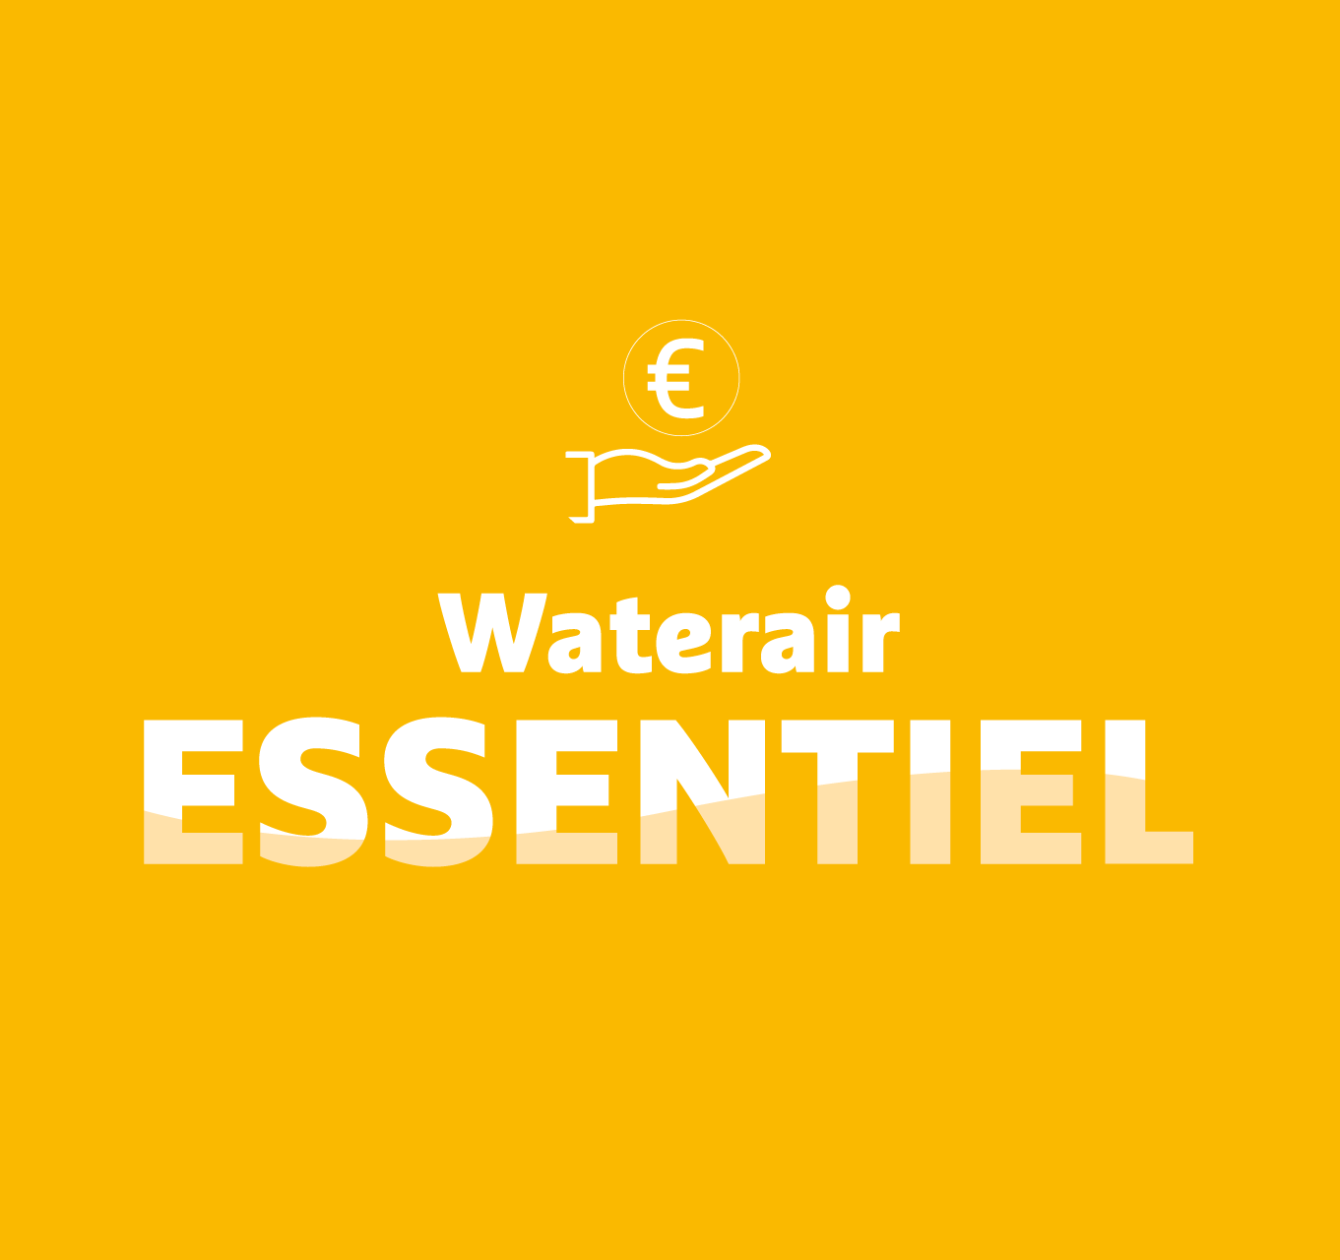 Waterair Essentiel: odolný bazén za lepší cenu